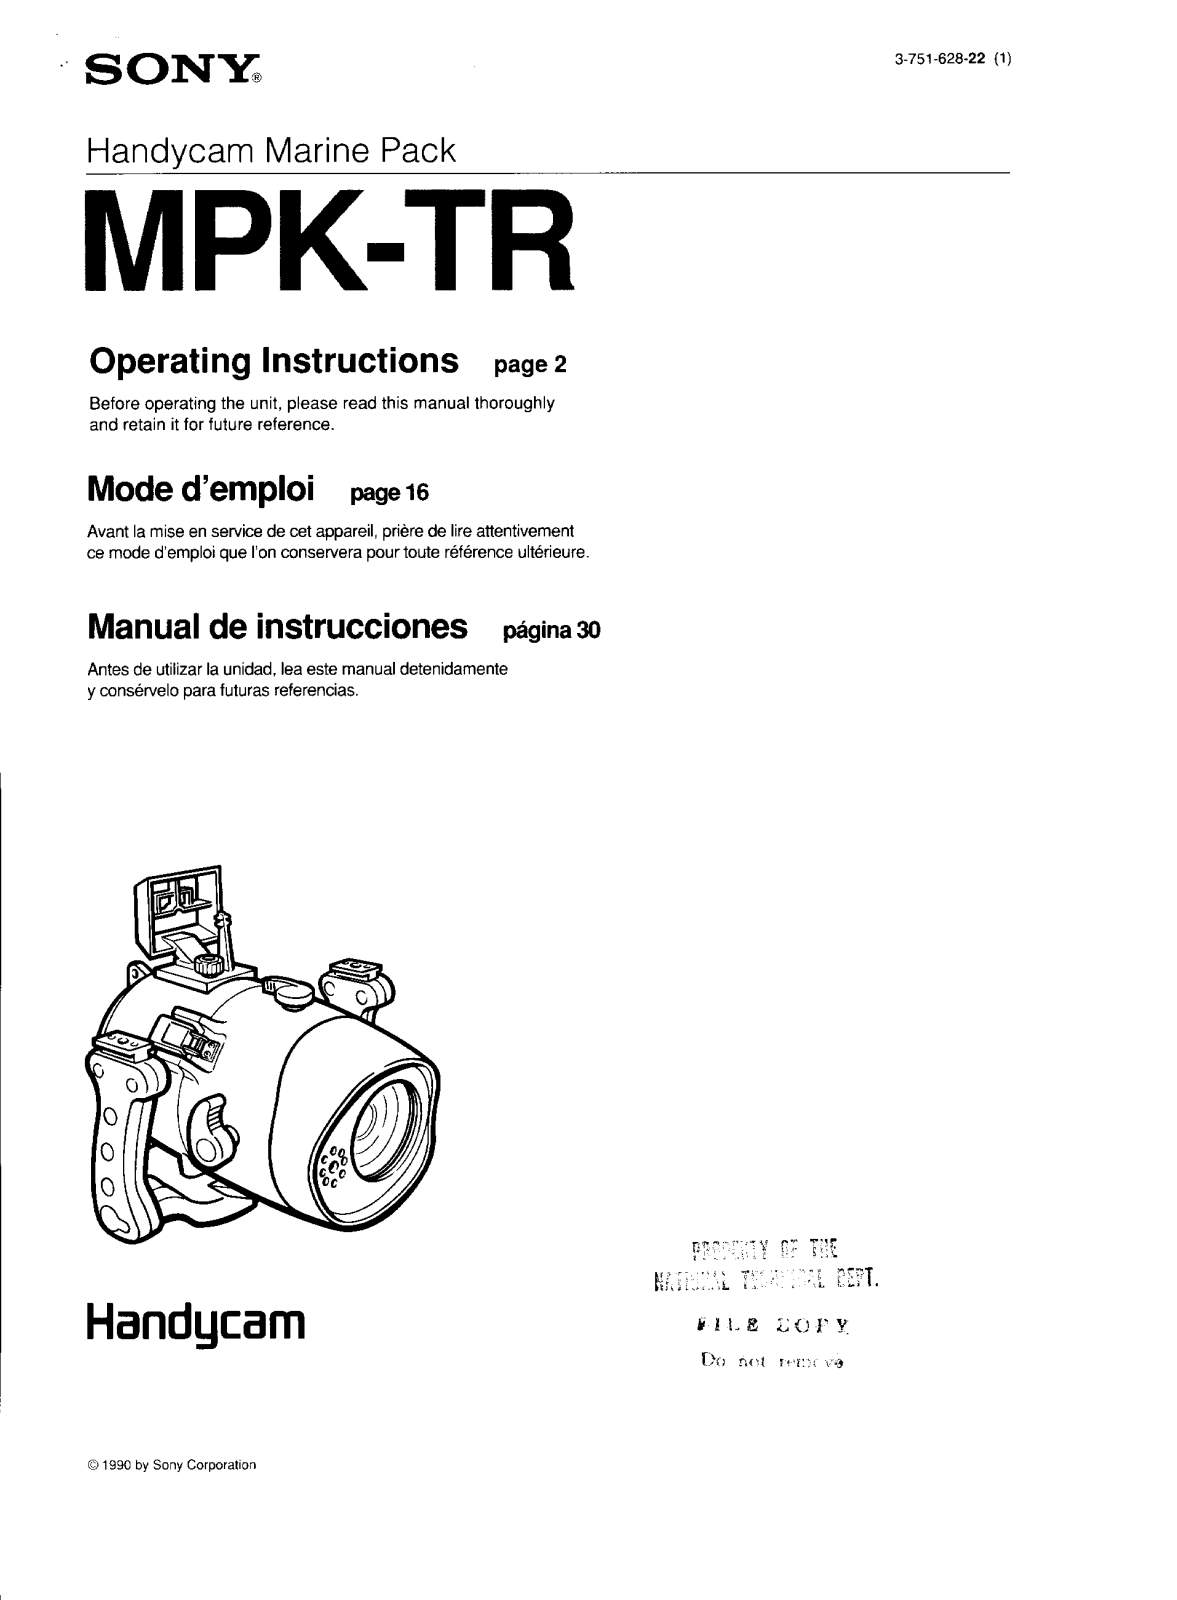 Sony MPK-TR Operating manual